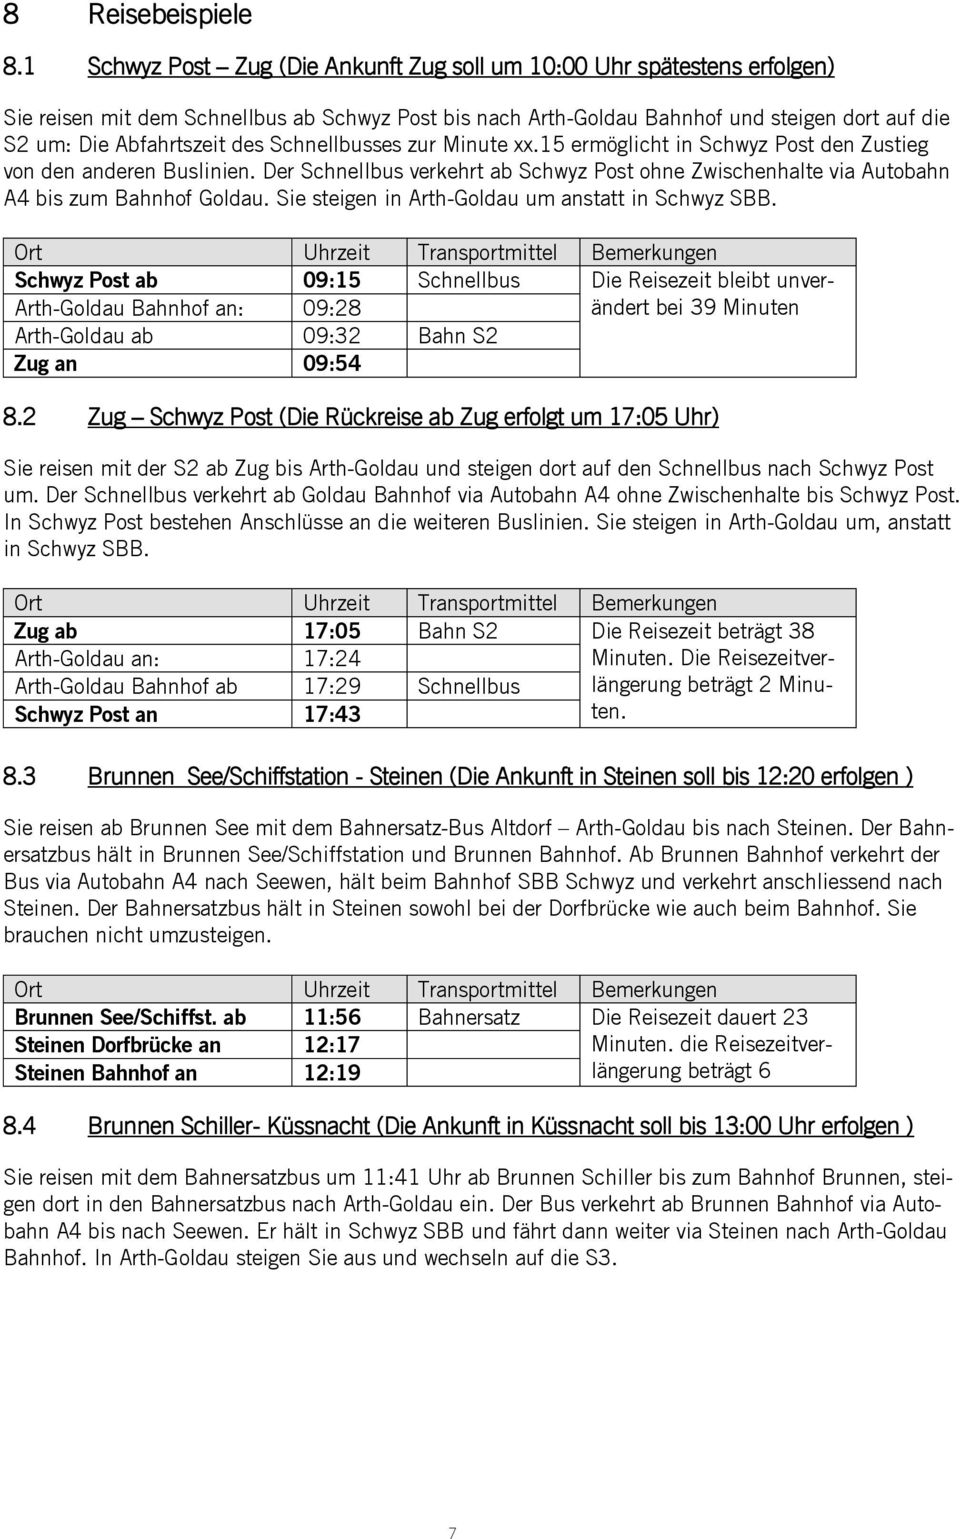 des Schnellbusses zur Minute xx.15 ermöglicht in Schwyz Post den Zustieg von den anderen Buslinien. Der Schnellbus verkehrt ab Schwyz Post ohne Zwischenhalte via Autobahn A4 bis zum Bahnhof Goldau.